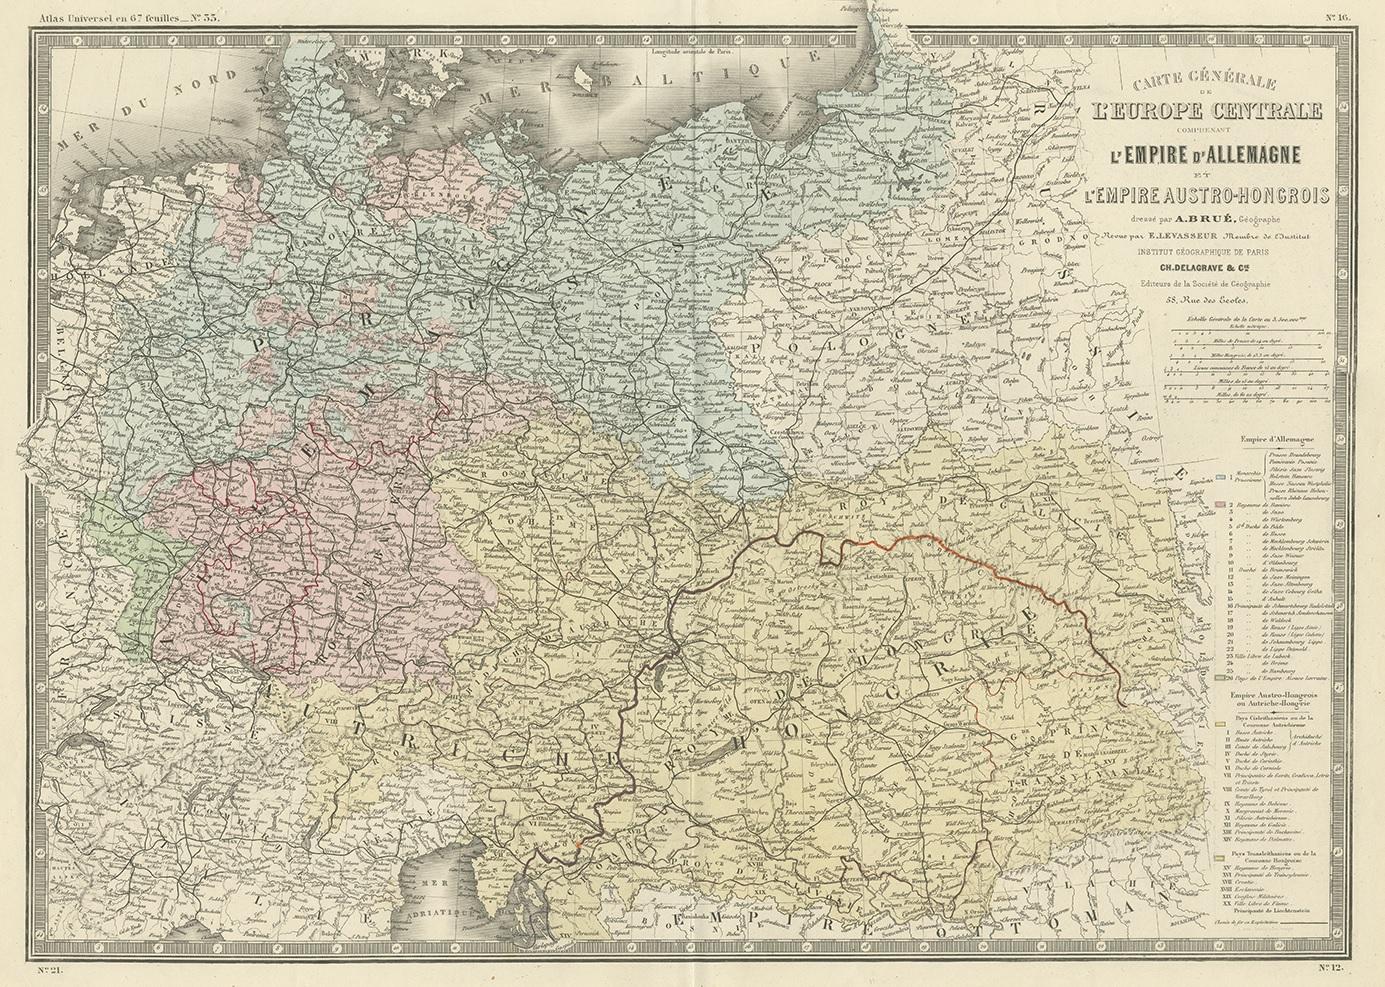 Antique map titled 'Carte générale de l'Europe Centrale (..)'. Large map of the German Empire. This map originates from 'Atlas de Géographie Moderne Physique et Politique' by A. Levasseur. Published 1875.